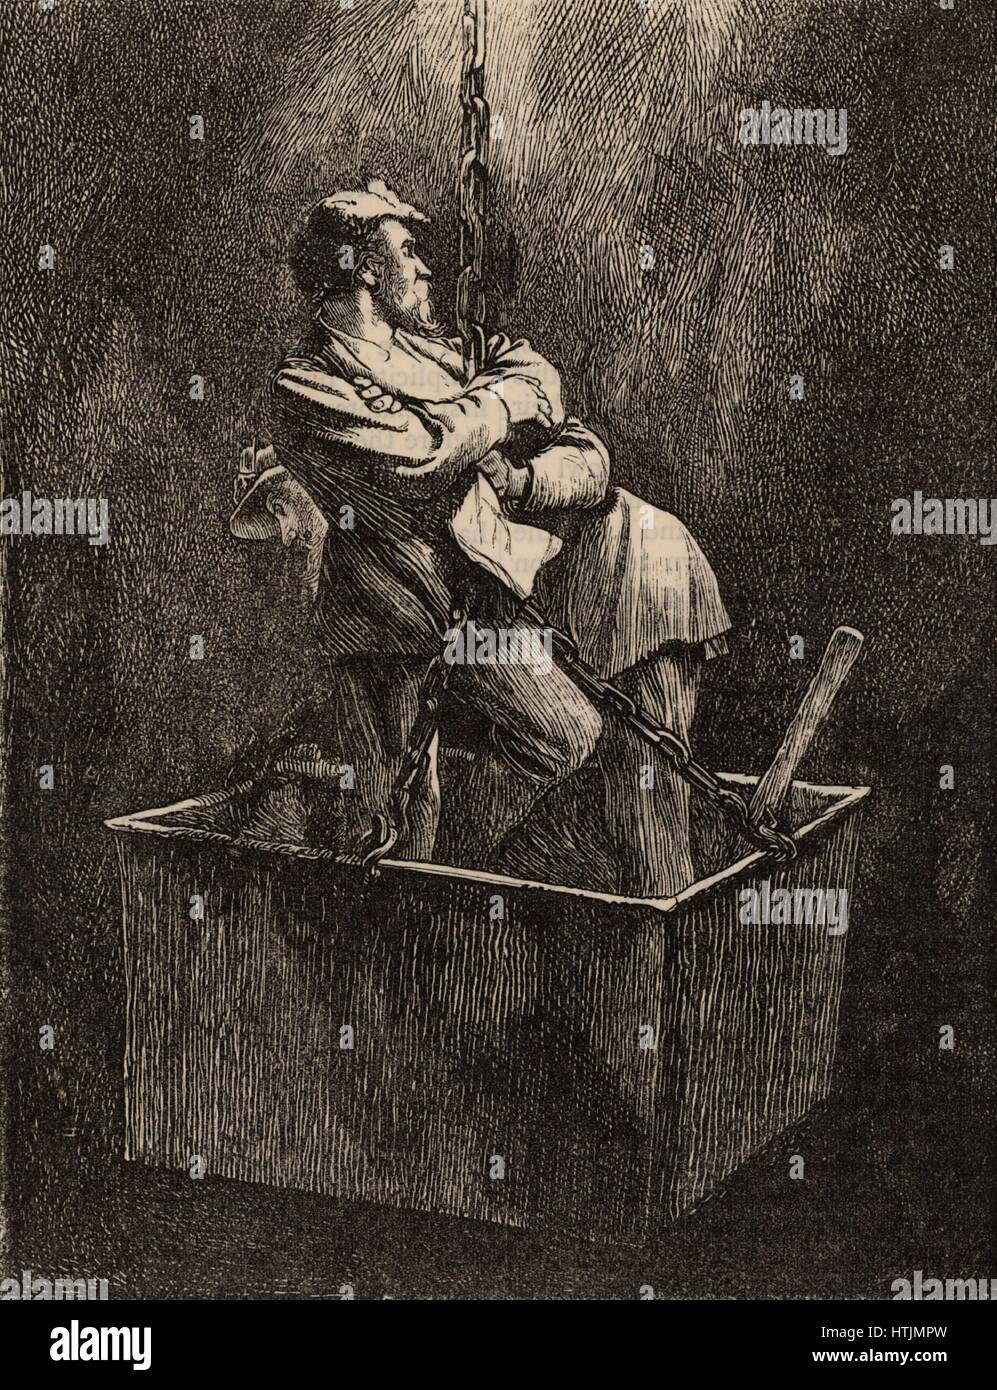 Per gli esploratori scendendo una miniera dell'albero dopo un incidente, Northumberland e Durham bacino, Inghilterra. Da 'buone parole" (London, 1871). Foto Stock